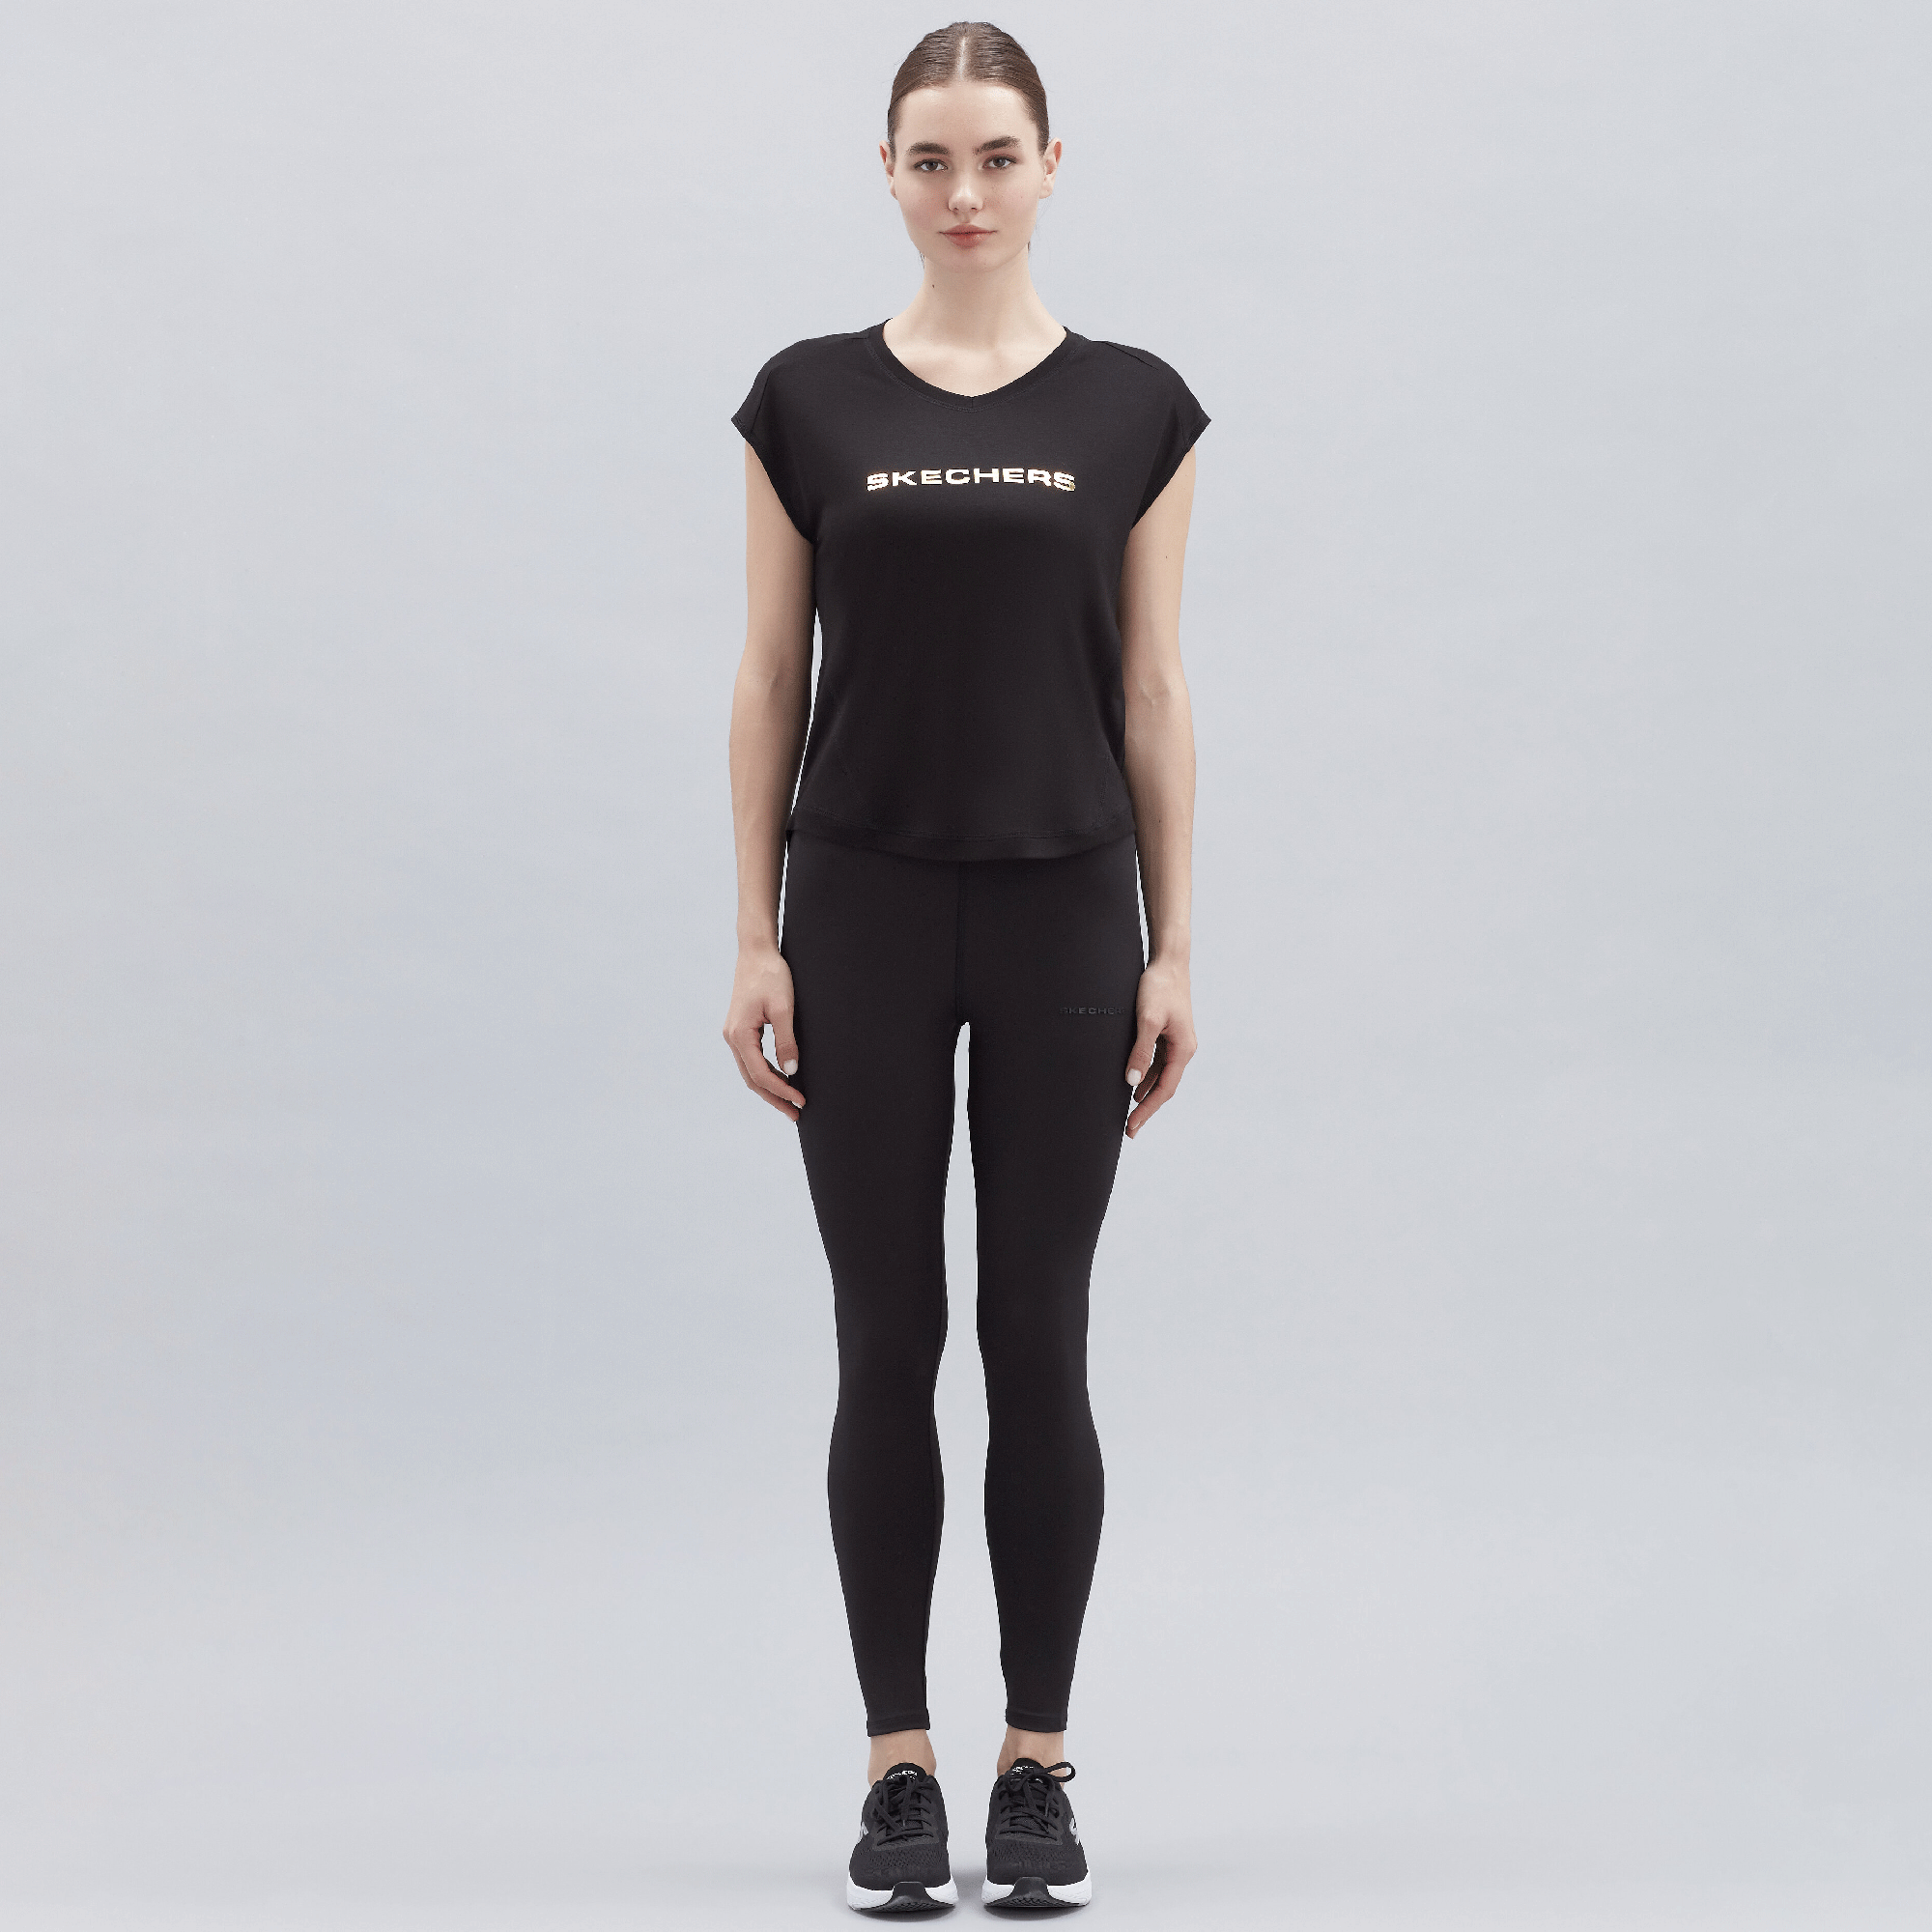  Skechers Graphic Kadın Siyah Tişört (S211289-001)